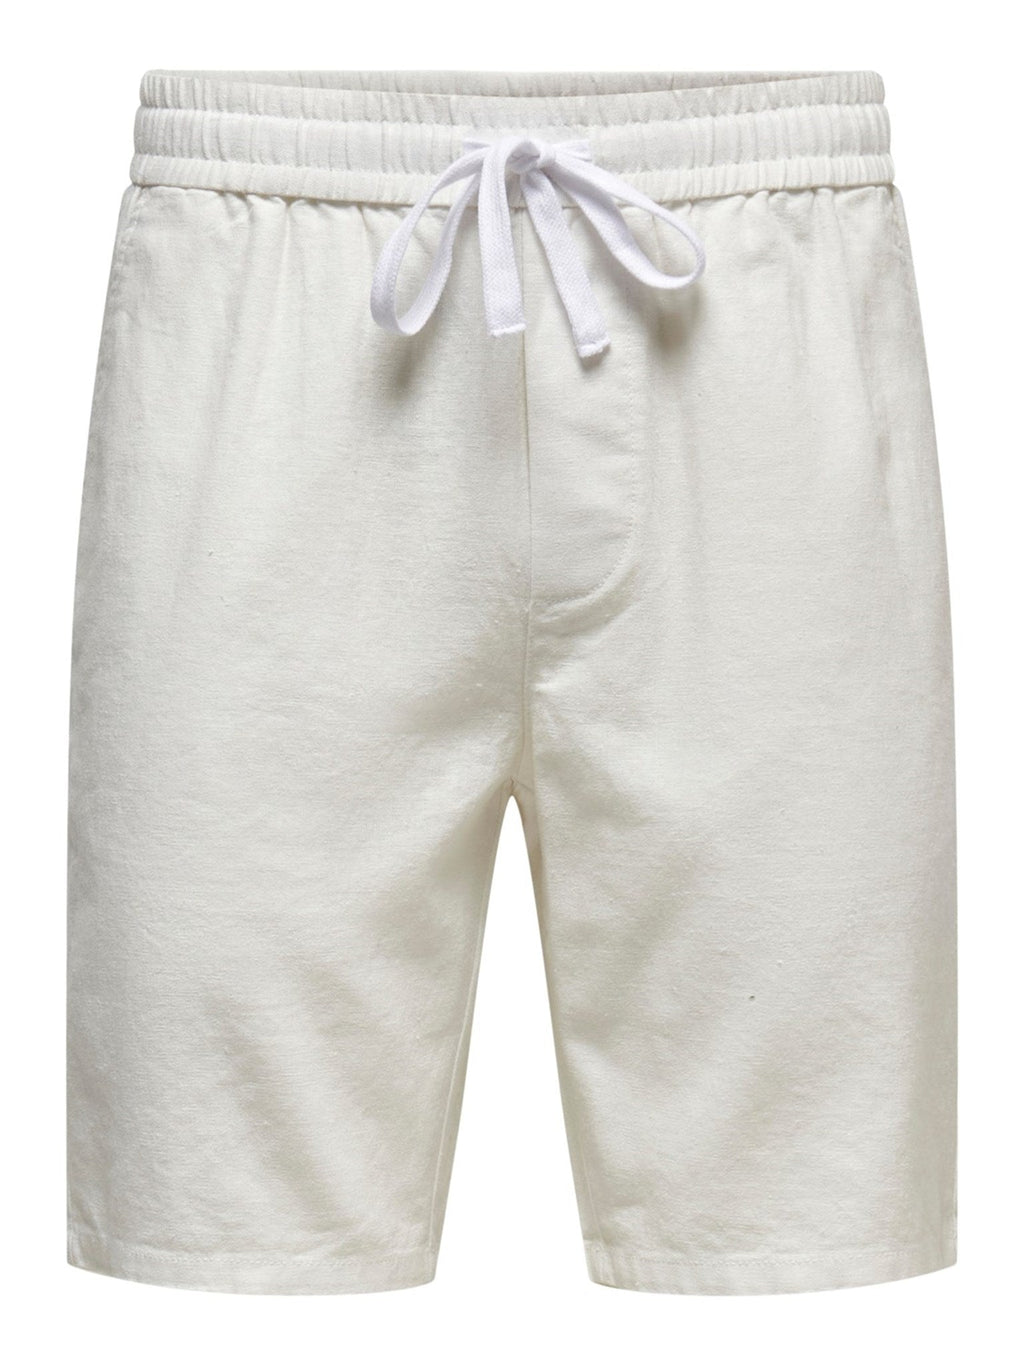 Pantalones cortos de lino Linus - blanco brillante